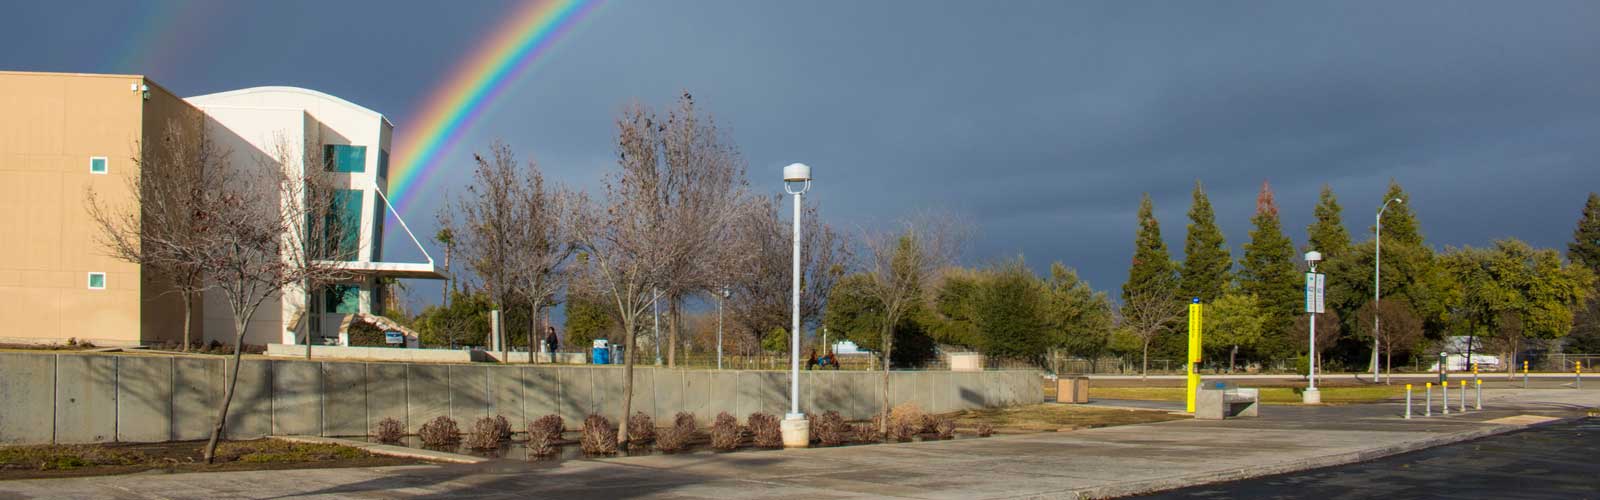 Clovis Building AC1 with rainbow.